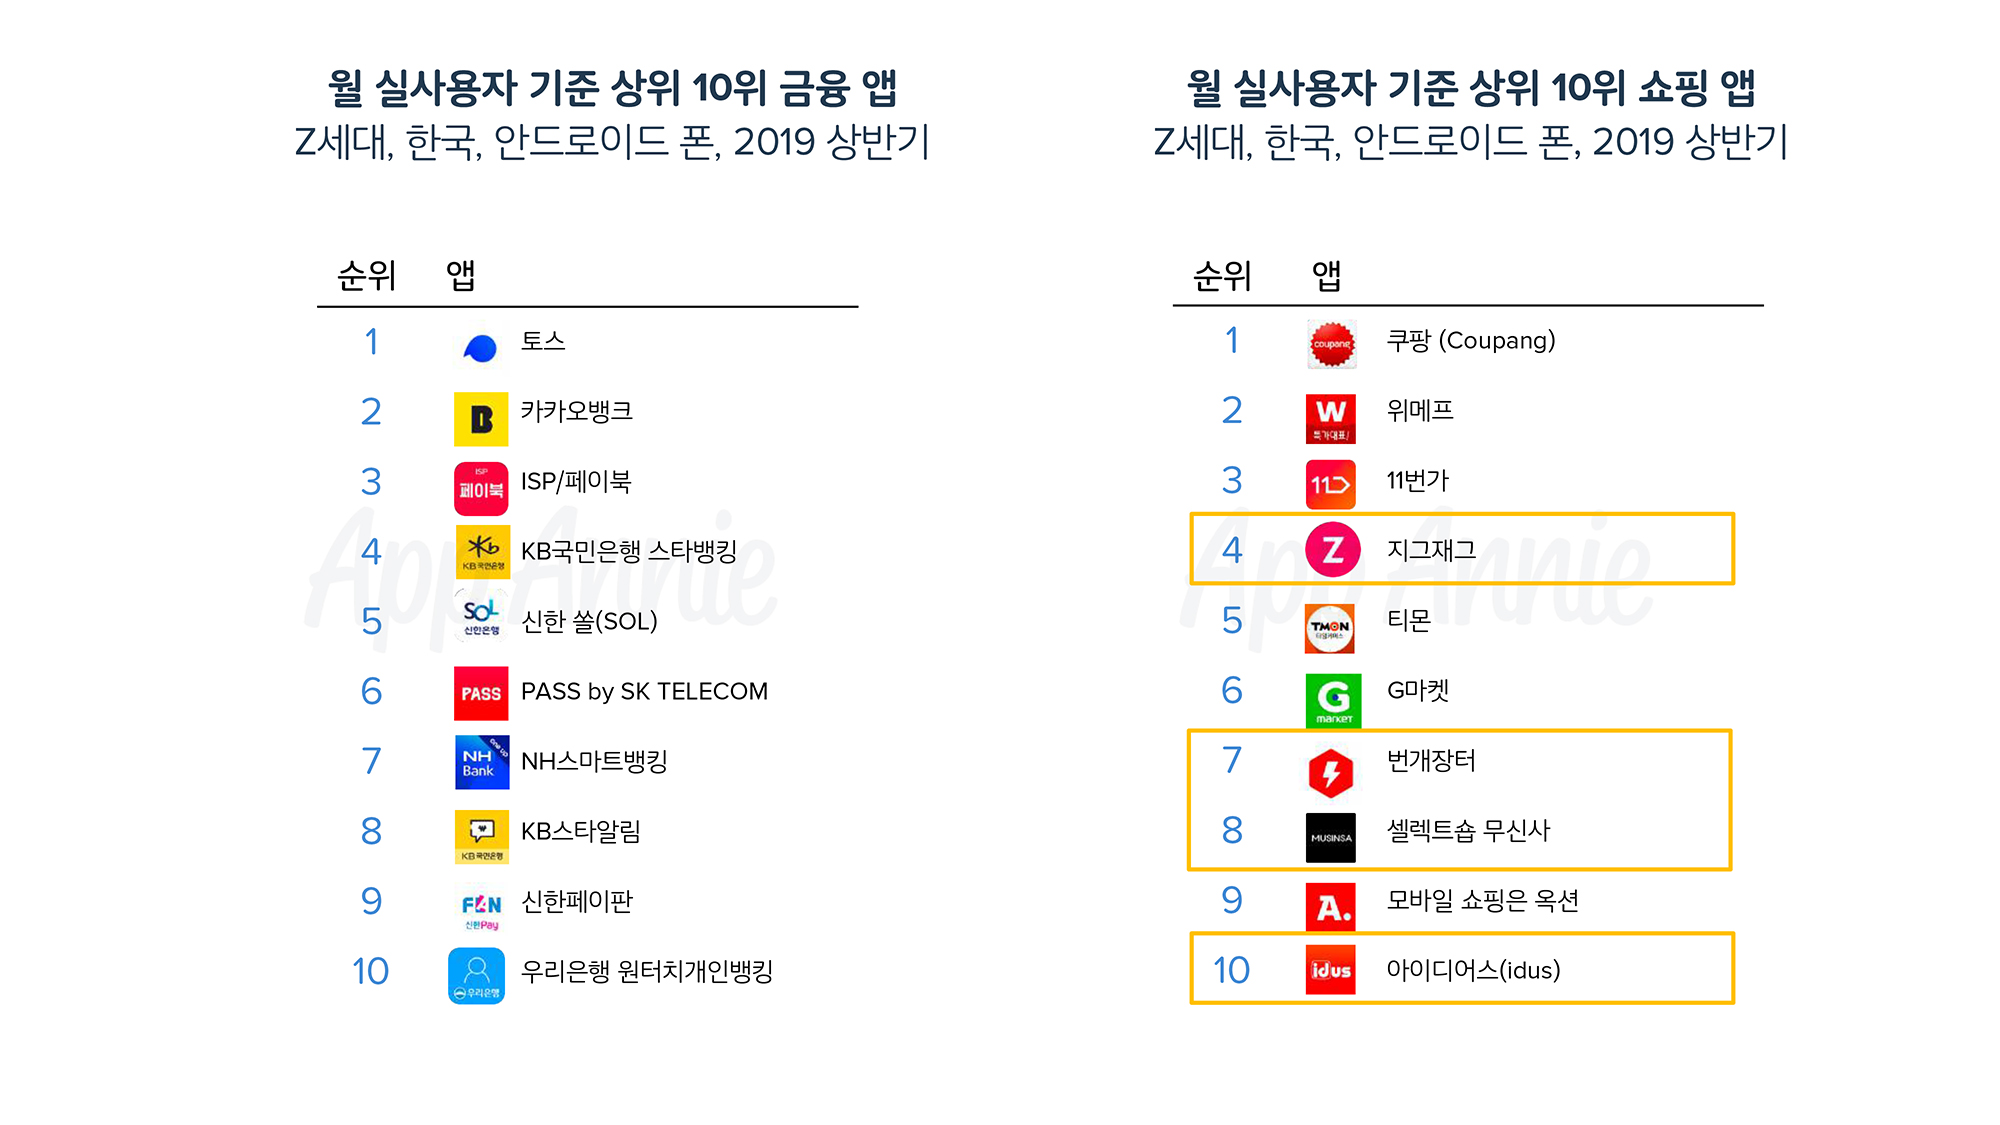 ▲  | 한국 Z세대의 금융, 쇼핑 분야 월 실사용자 기준 상위 10위 앱